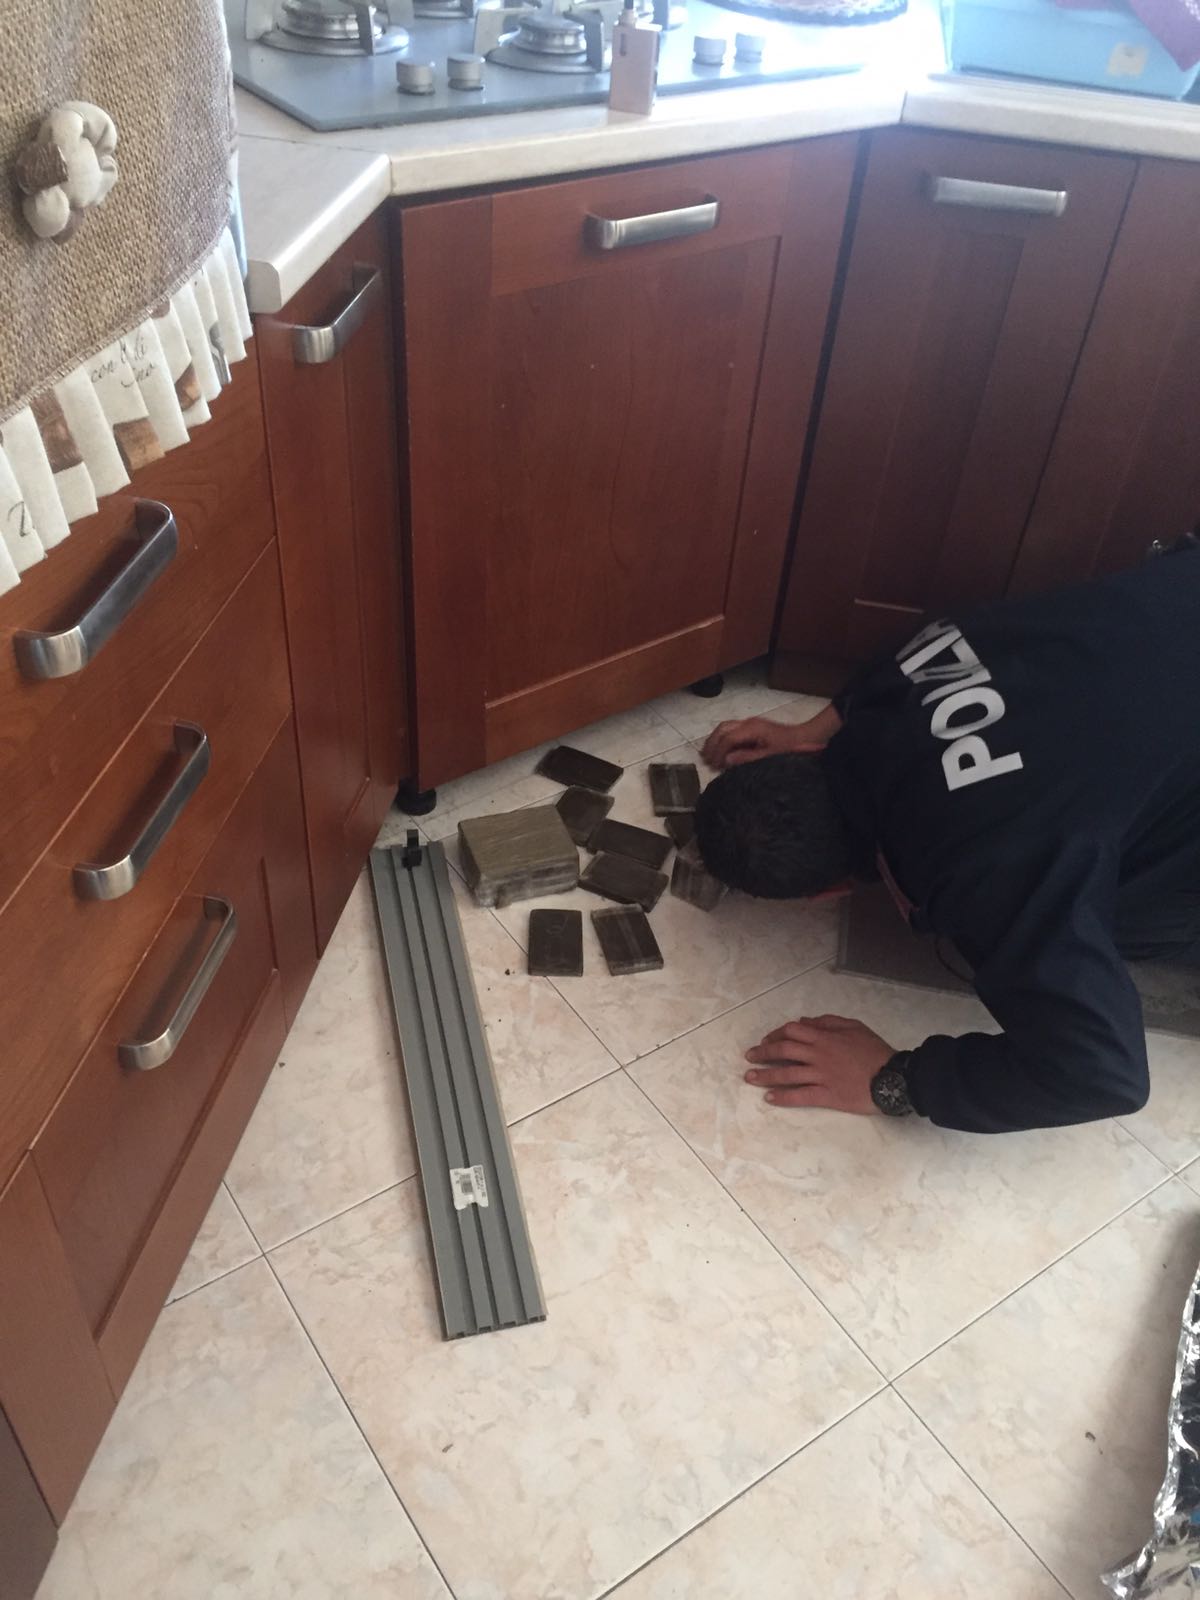  Frattaminore, nascondeva in casa 19 panetti di hashish: arrestato 19enne